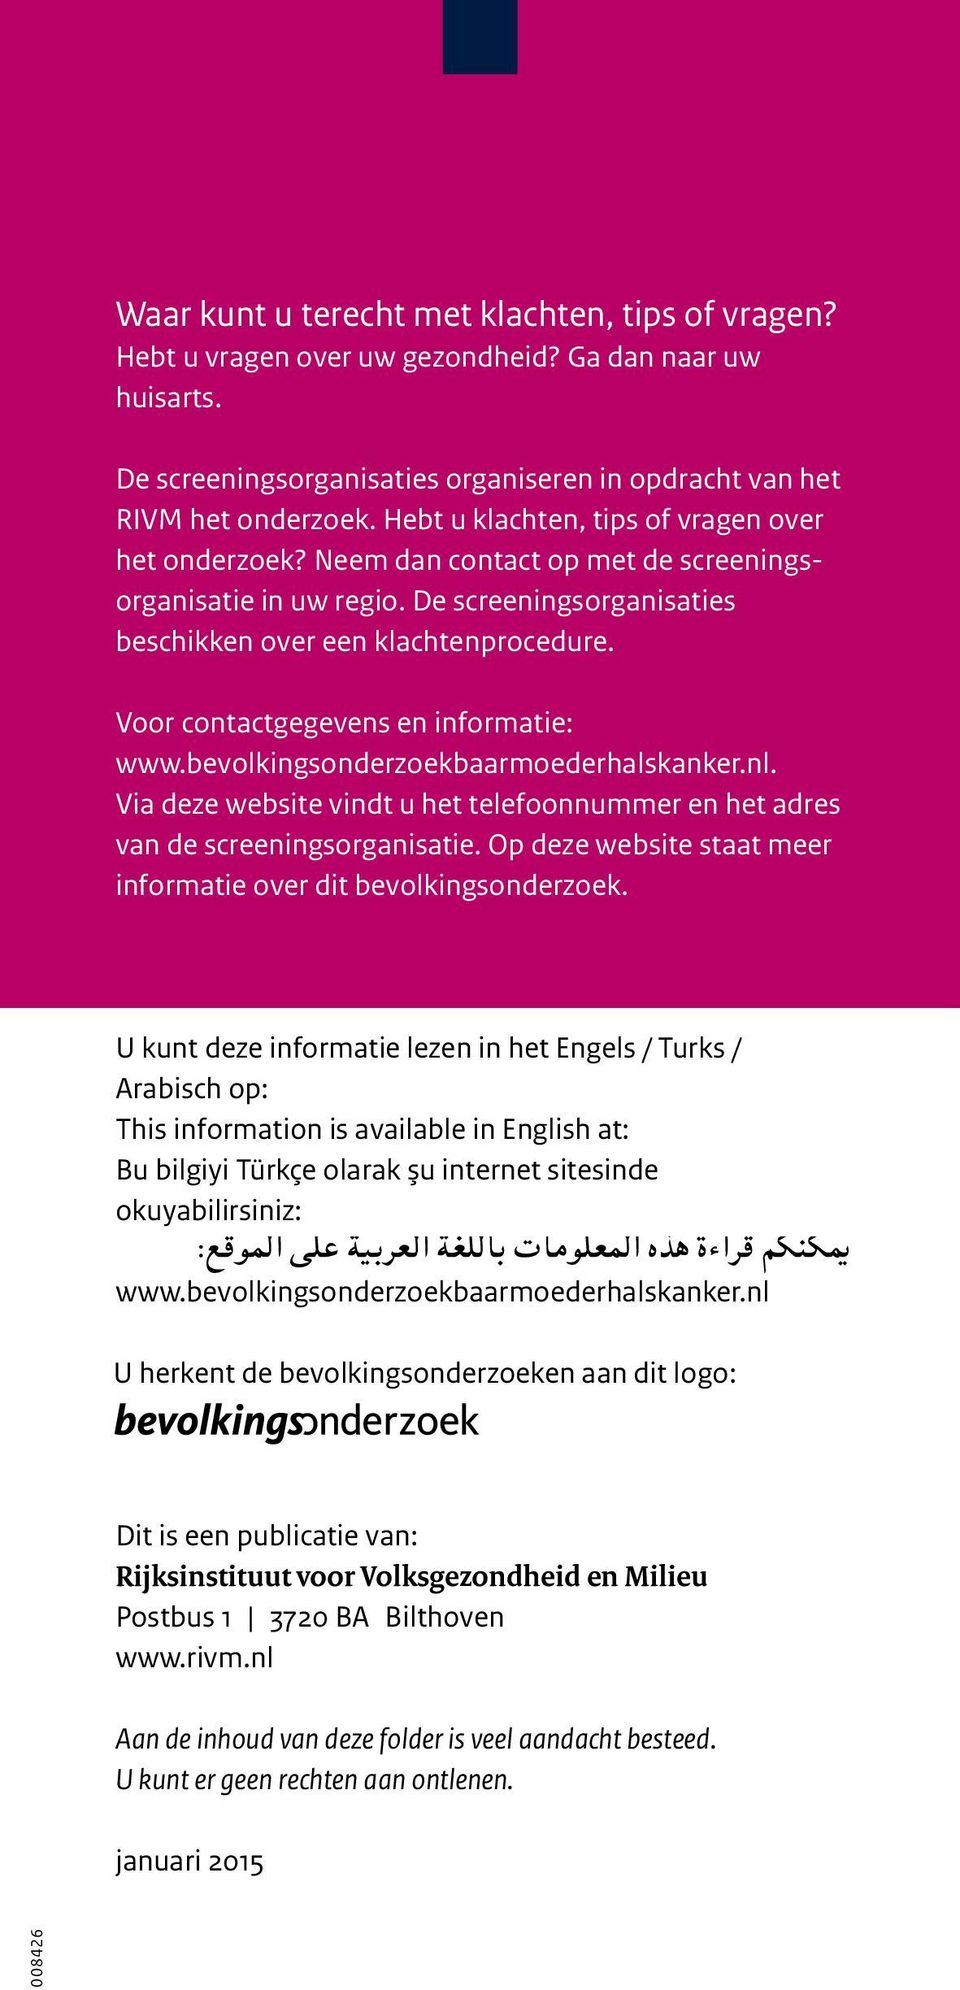 Voor contactgegevens en informatie: www.bevolkingsonderzoekbaarmoederhalskanker.nl. Via deze website vindt u het telefoonnummer en het adres van de screeningsorganisatie.